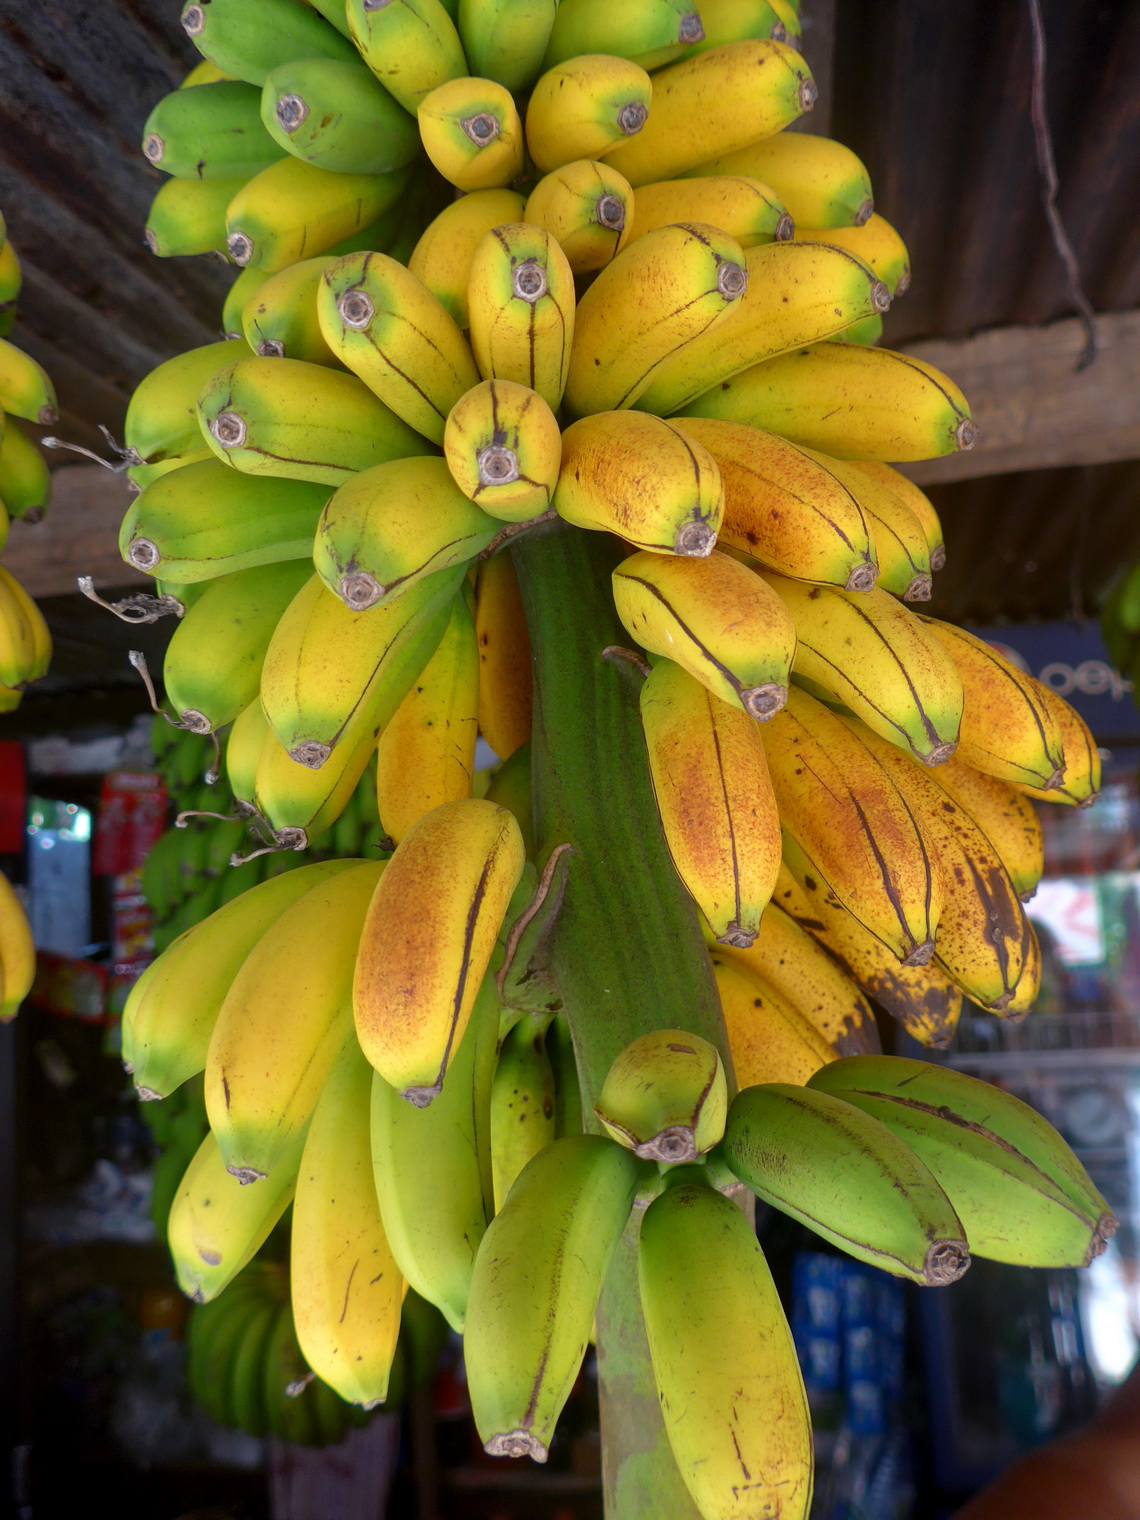 Bananas of tropical Union Juarez